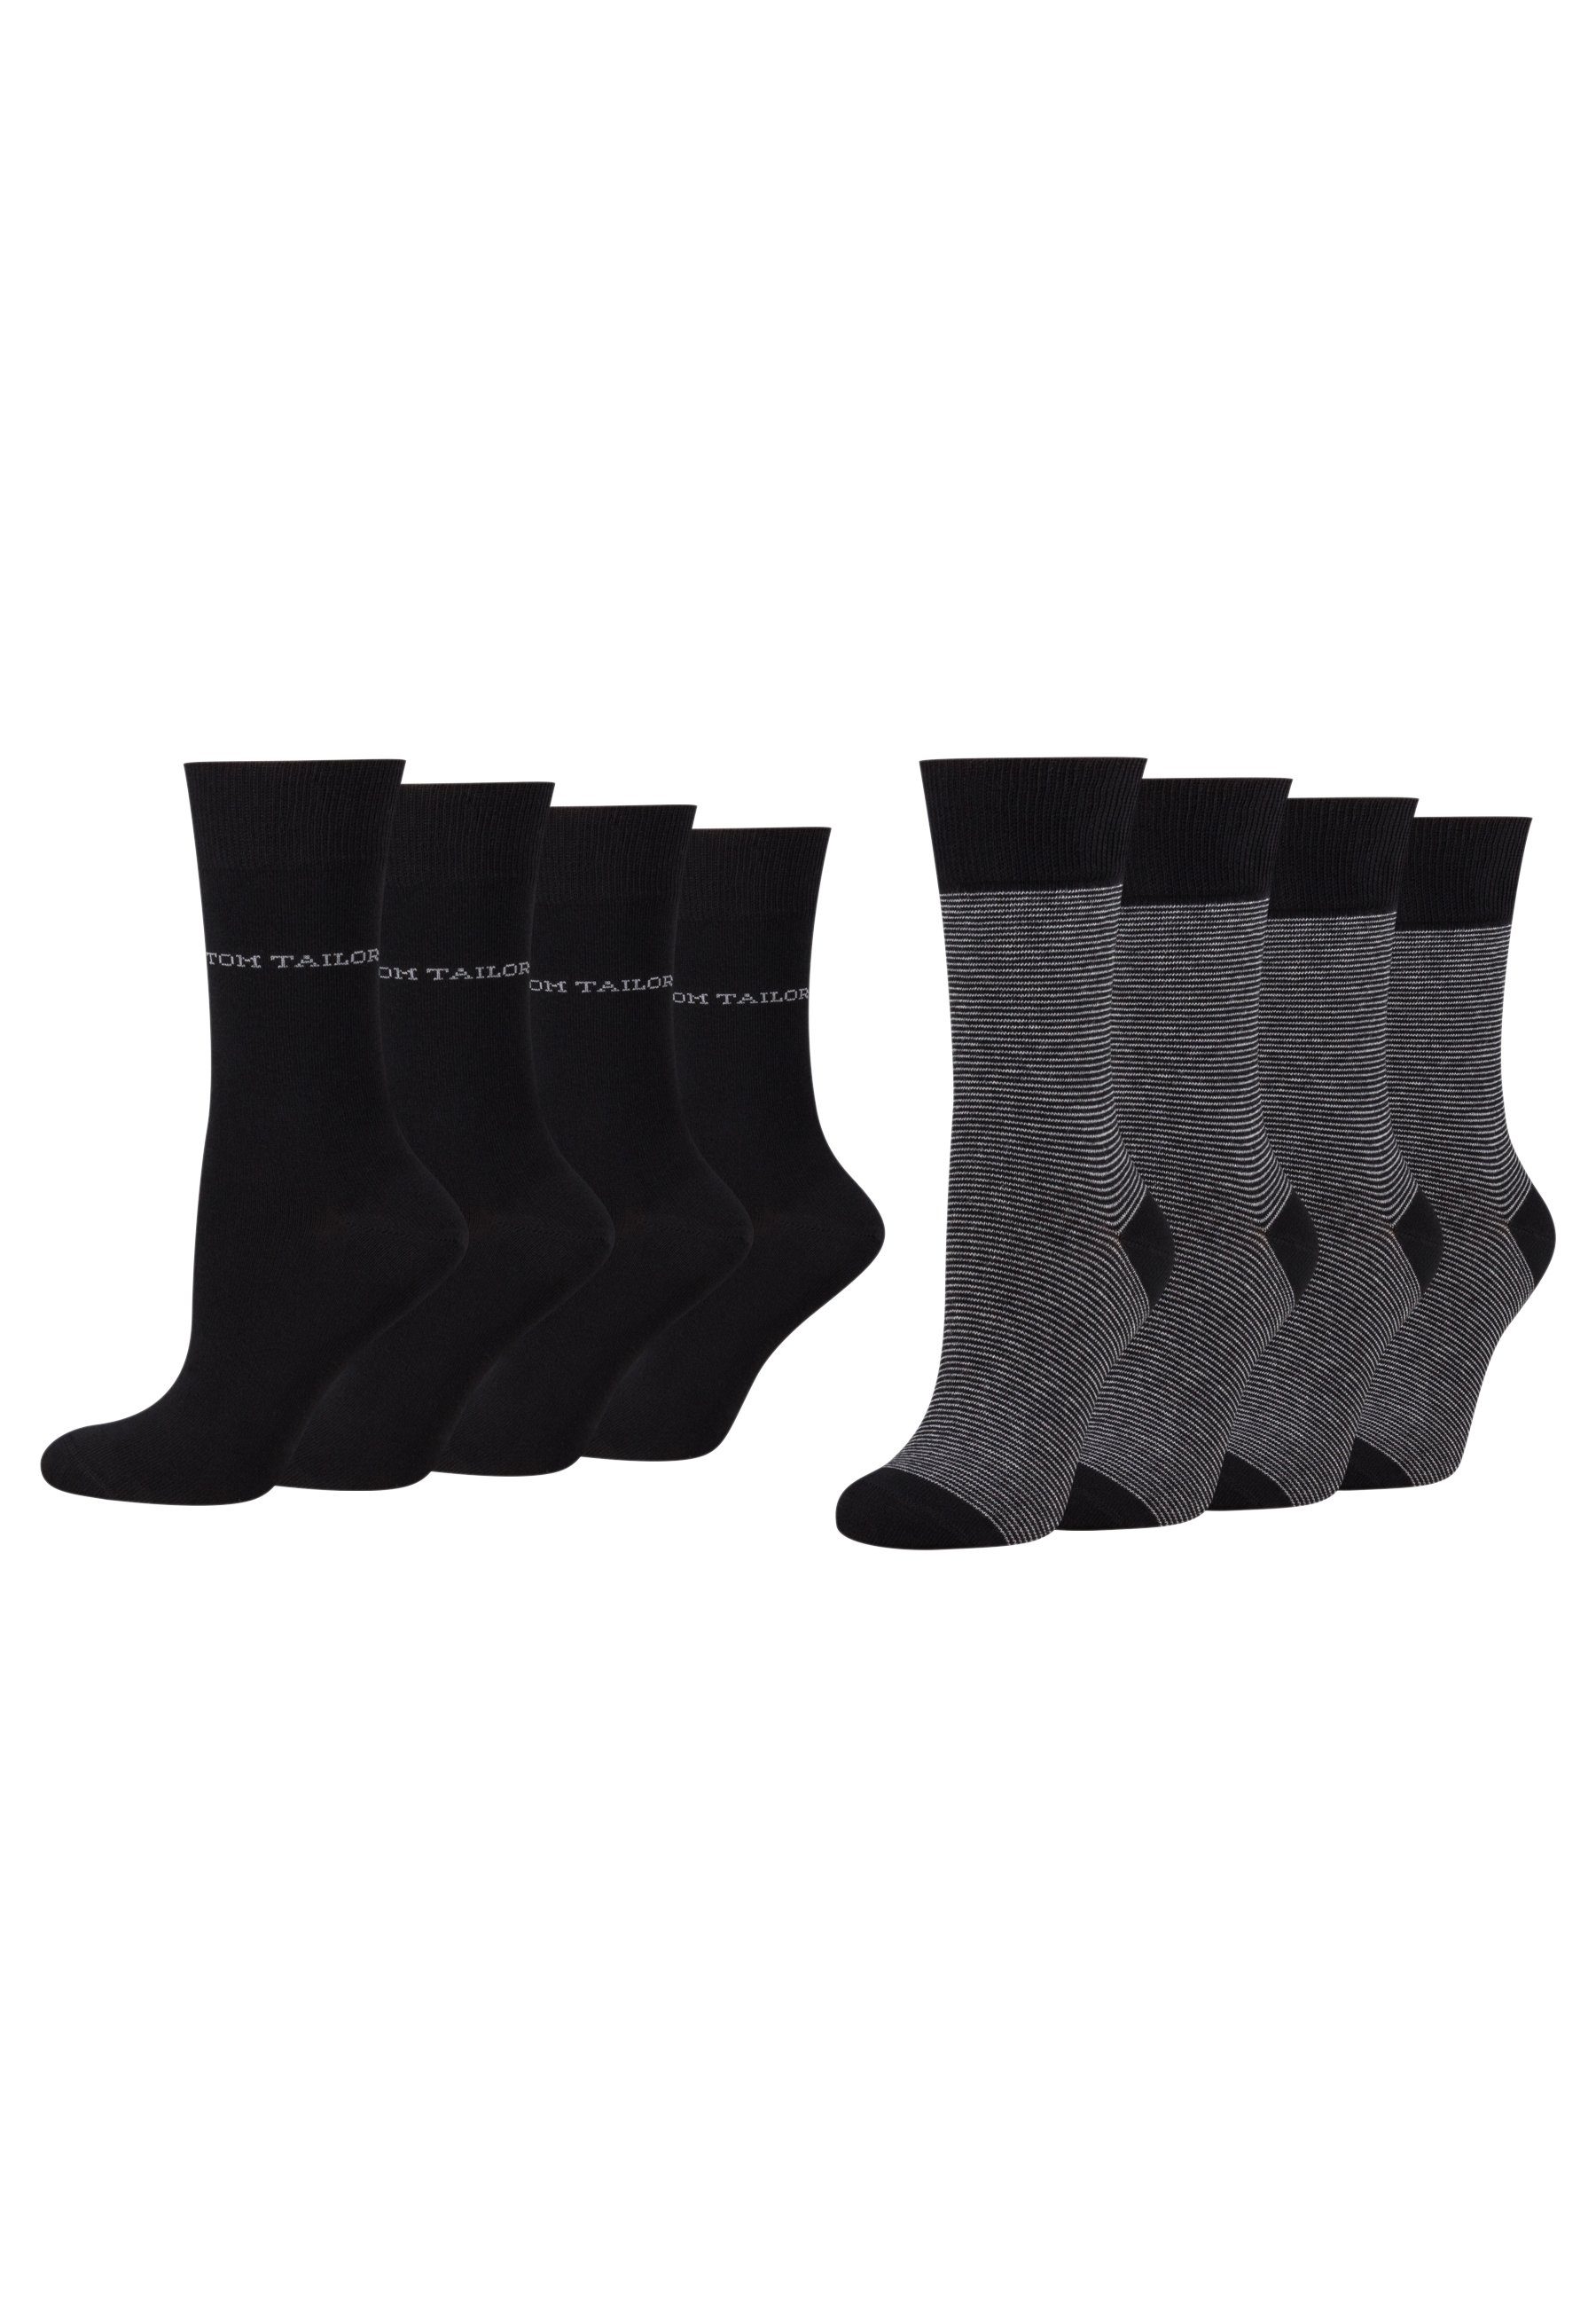 TOM TAILOR Socken Tailor basic Tom stripe 8 women Paar 2er black socks 9521610042_8